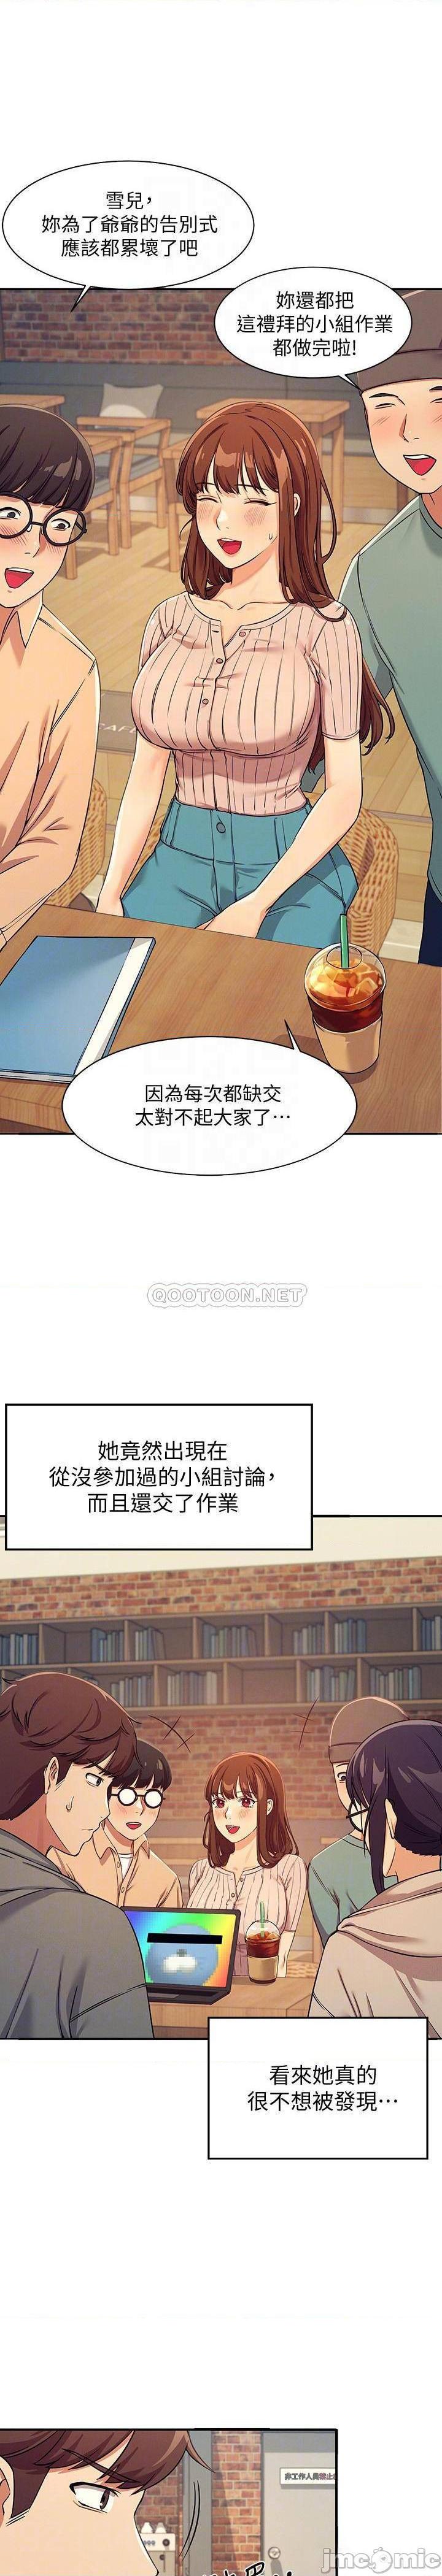 《谁说理组没正妹?》漫画 第3话 「教训」清纯校花